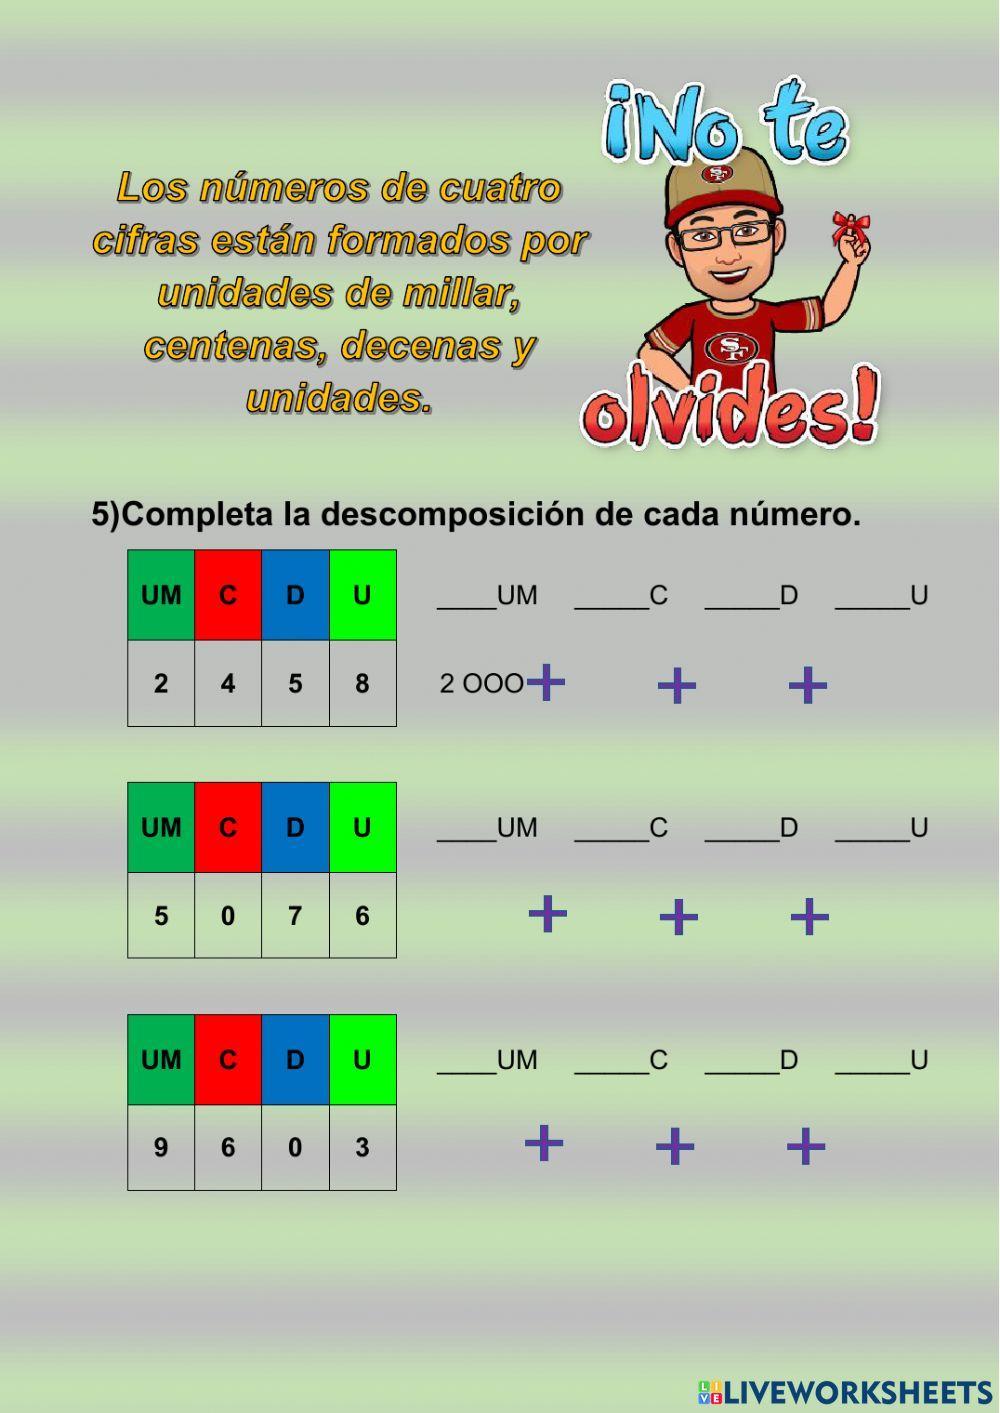 Numeración: características de números de cuatro cifras.